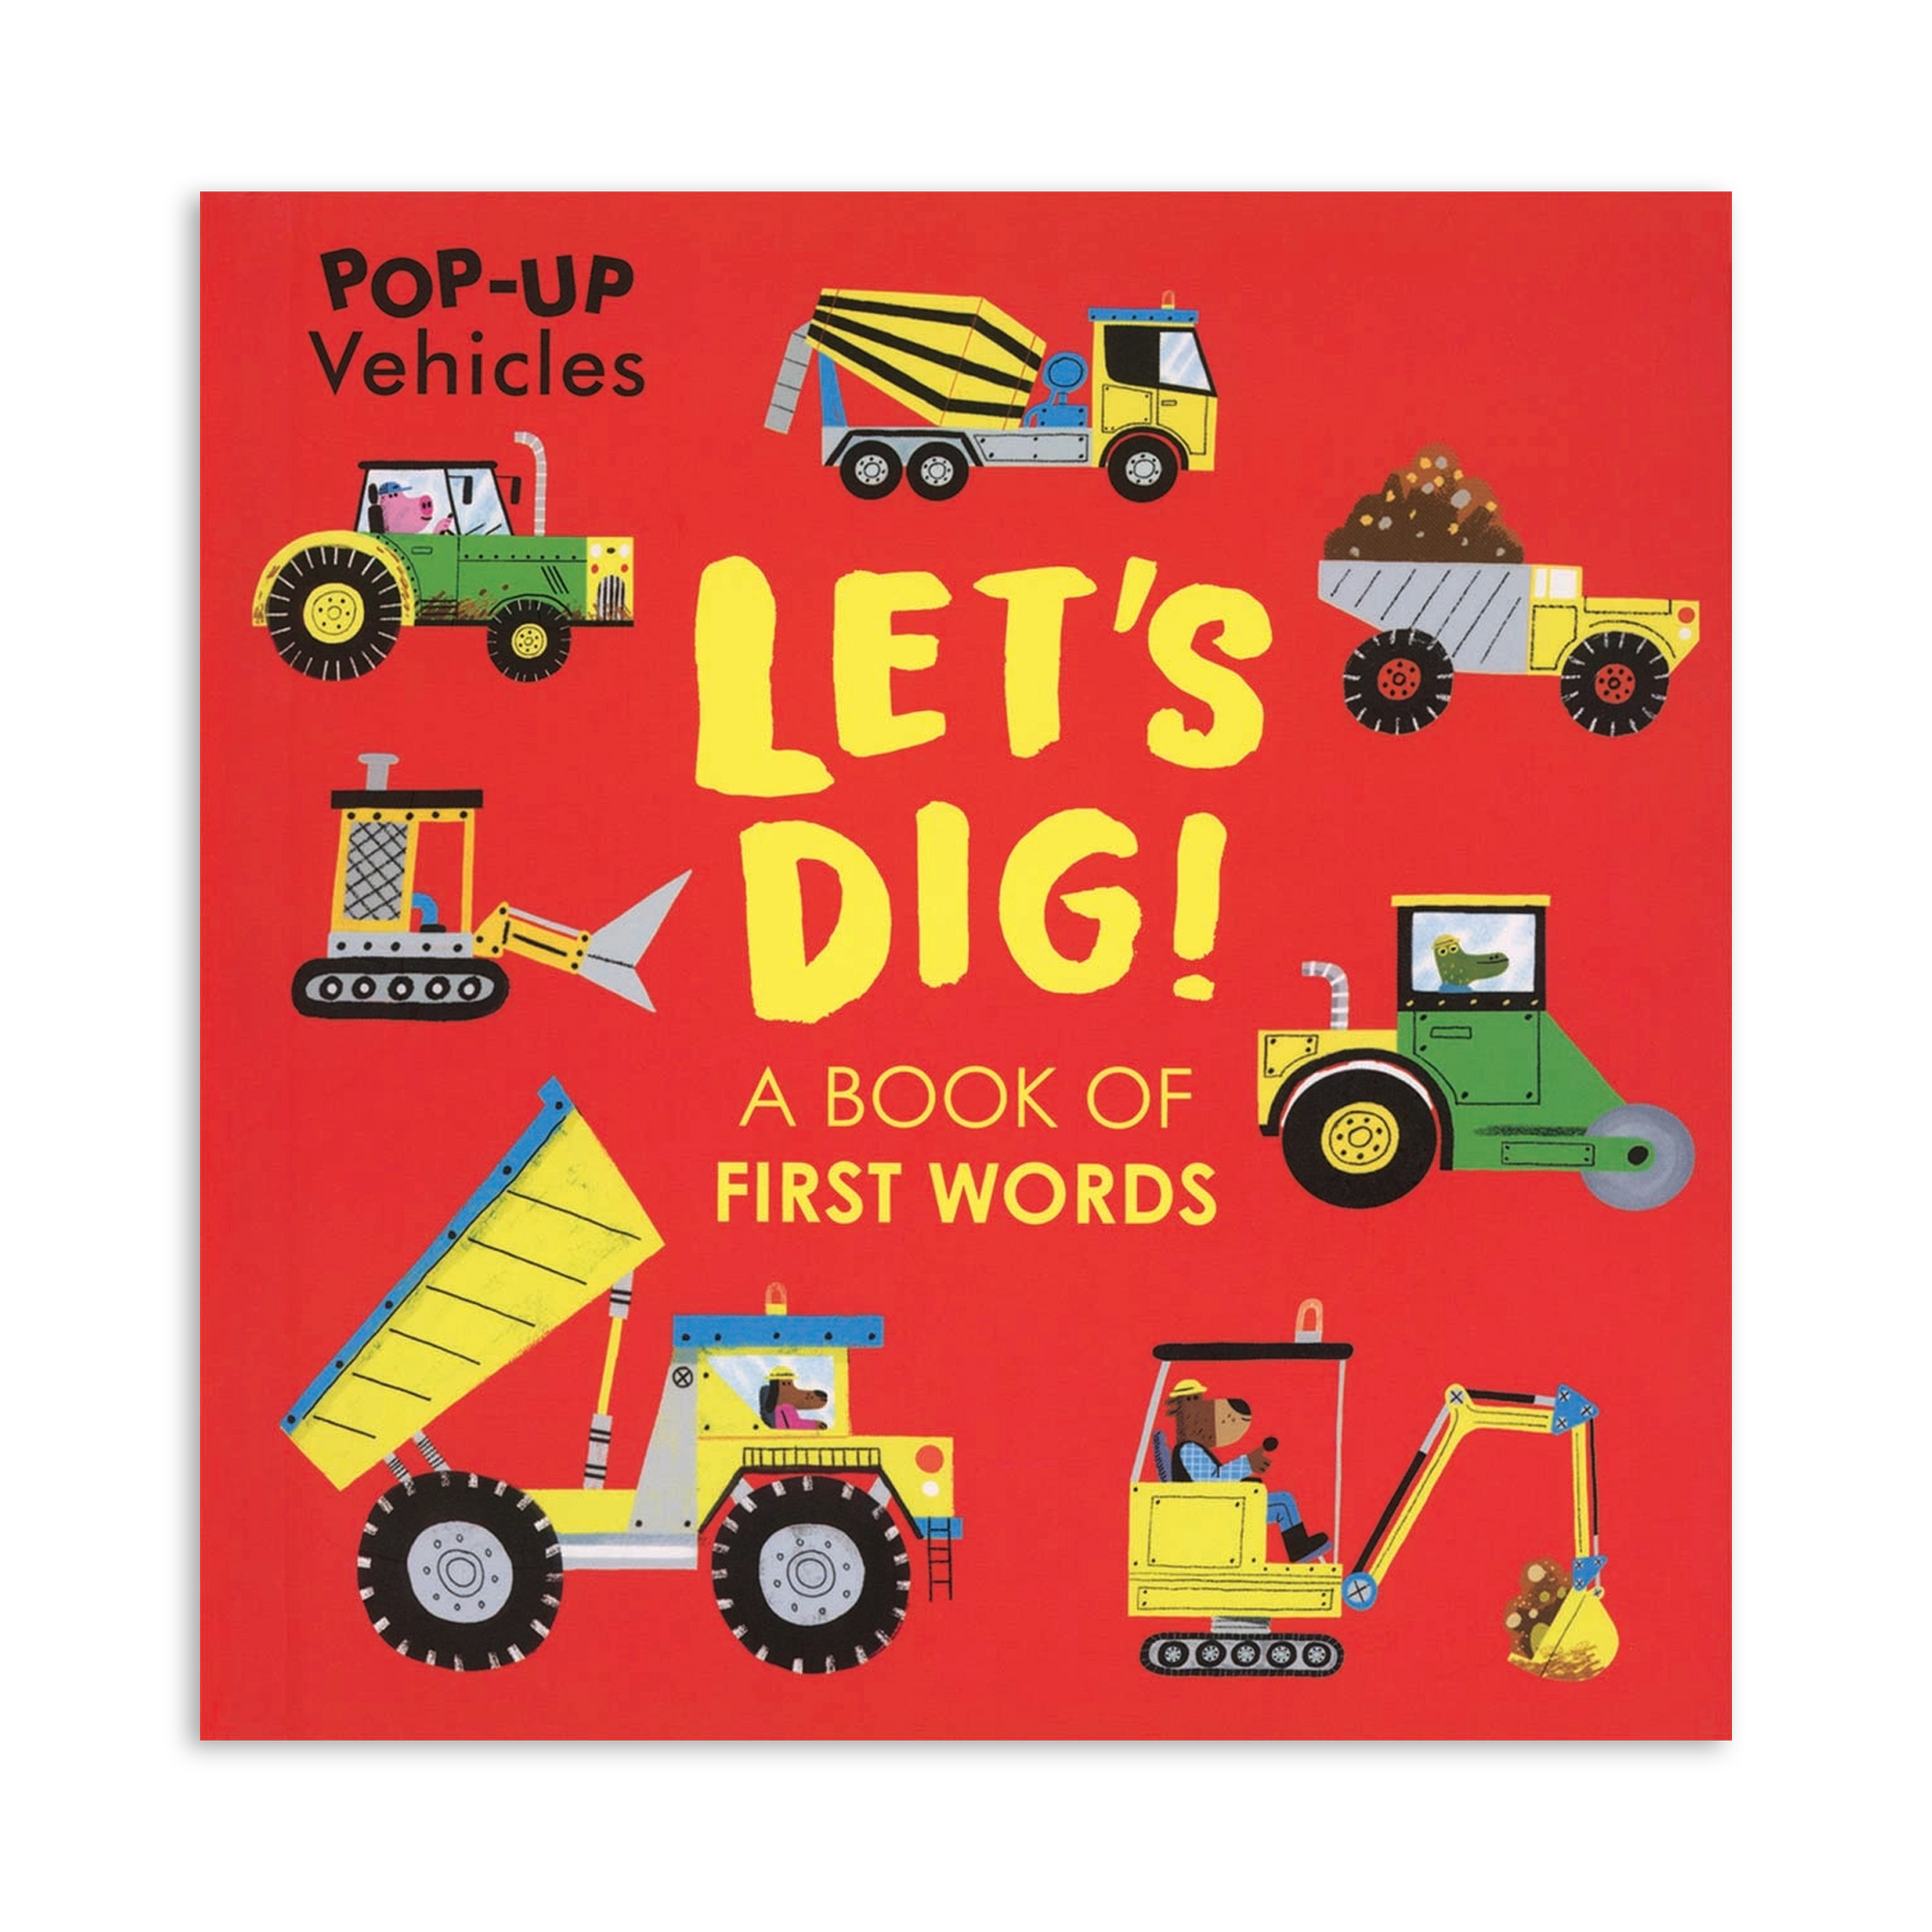 Pop-Up Vehicles: Let's Dig!